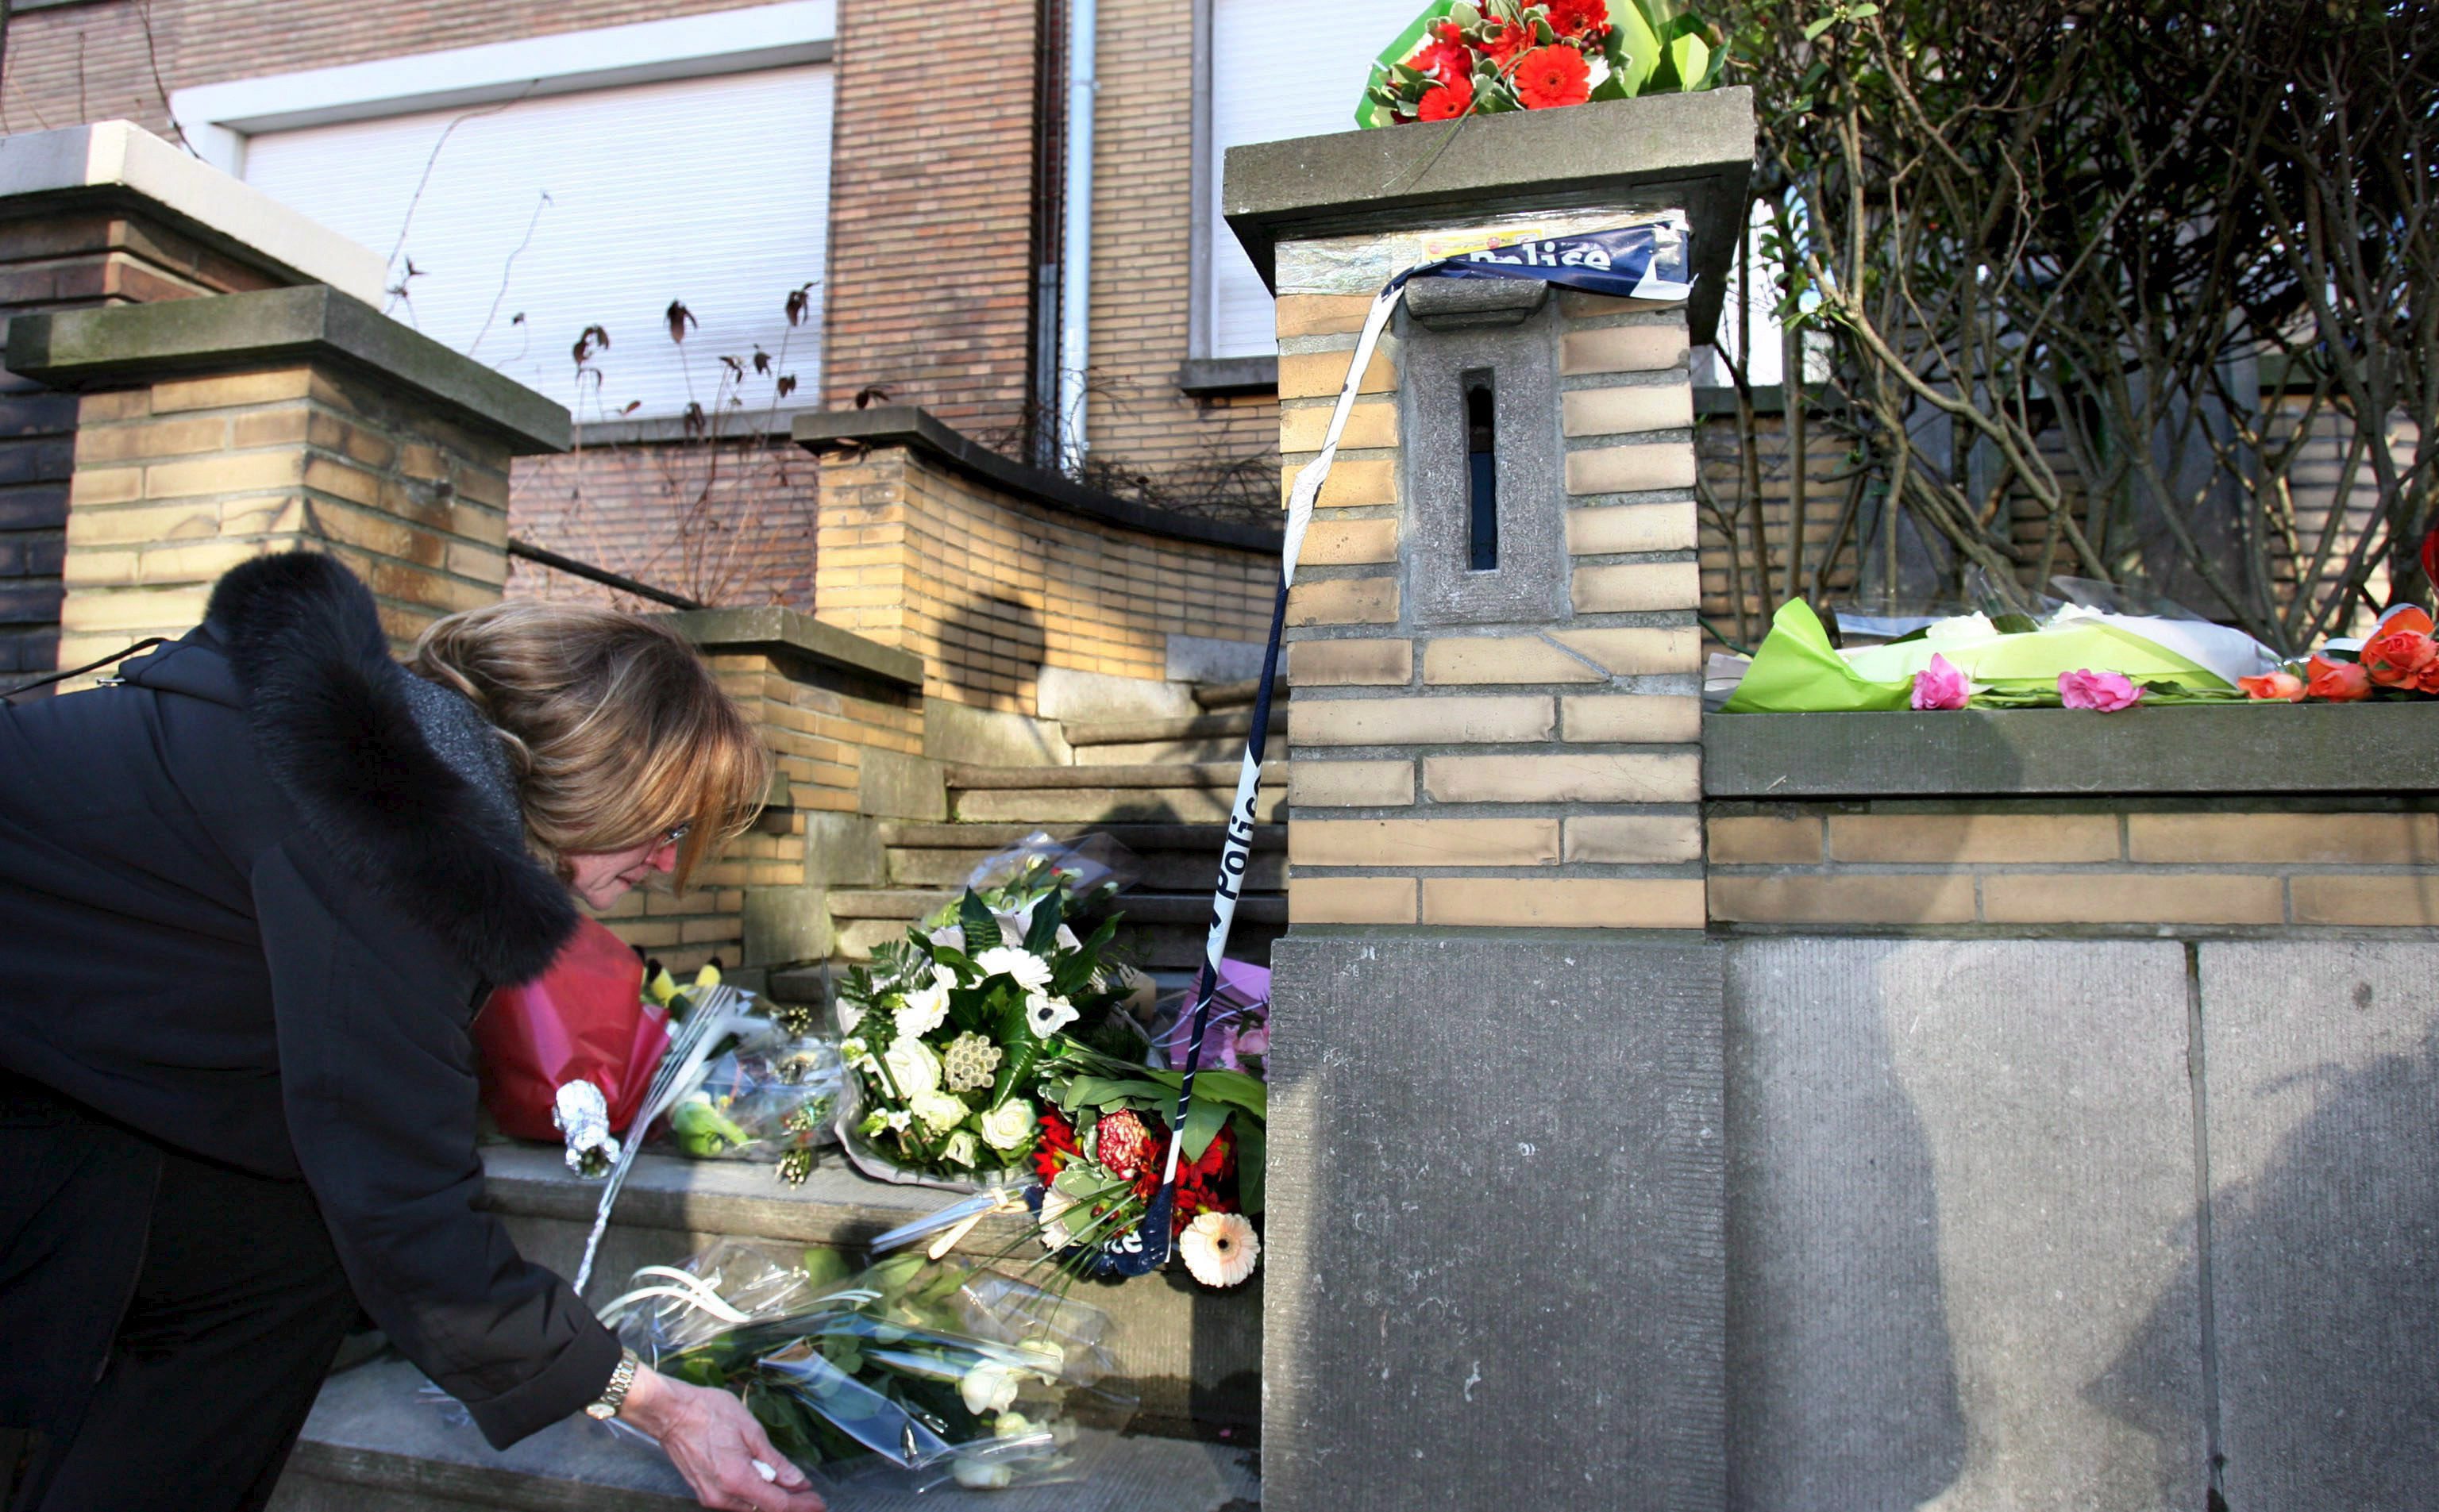 Βέλγιο: Η Ζενεβιέβ Λερμίτ δολοφόνησε τα 5 παιδιά της - 16 χρόνια μετά υπεβλήθη σε ευθανασία